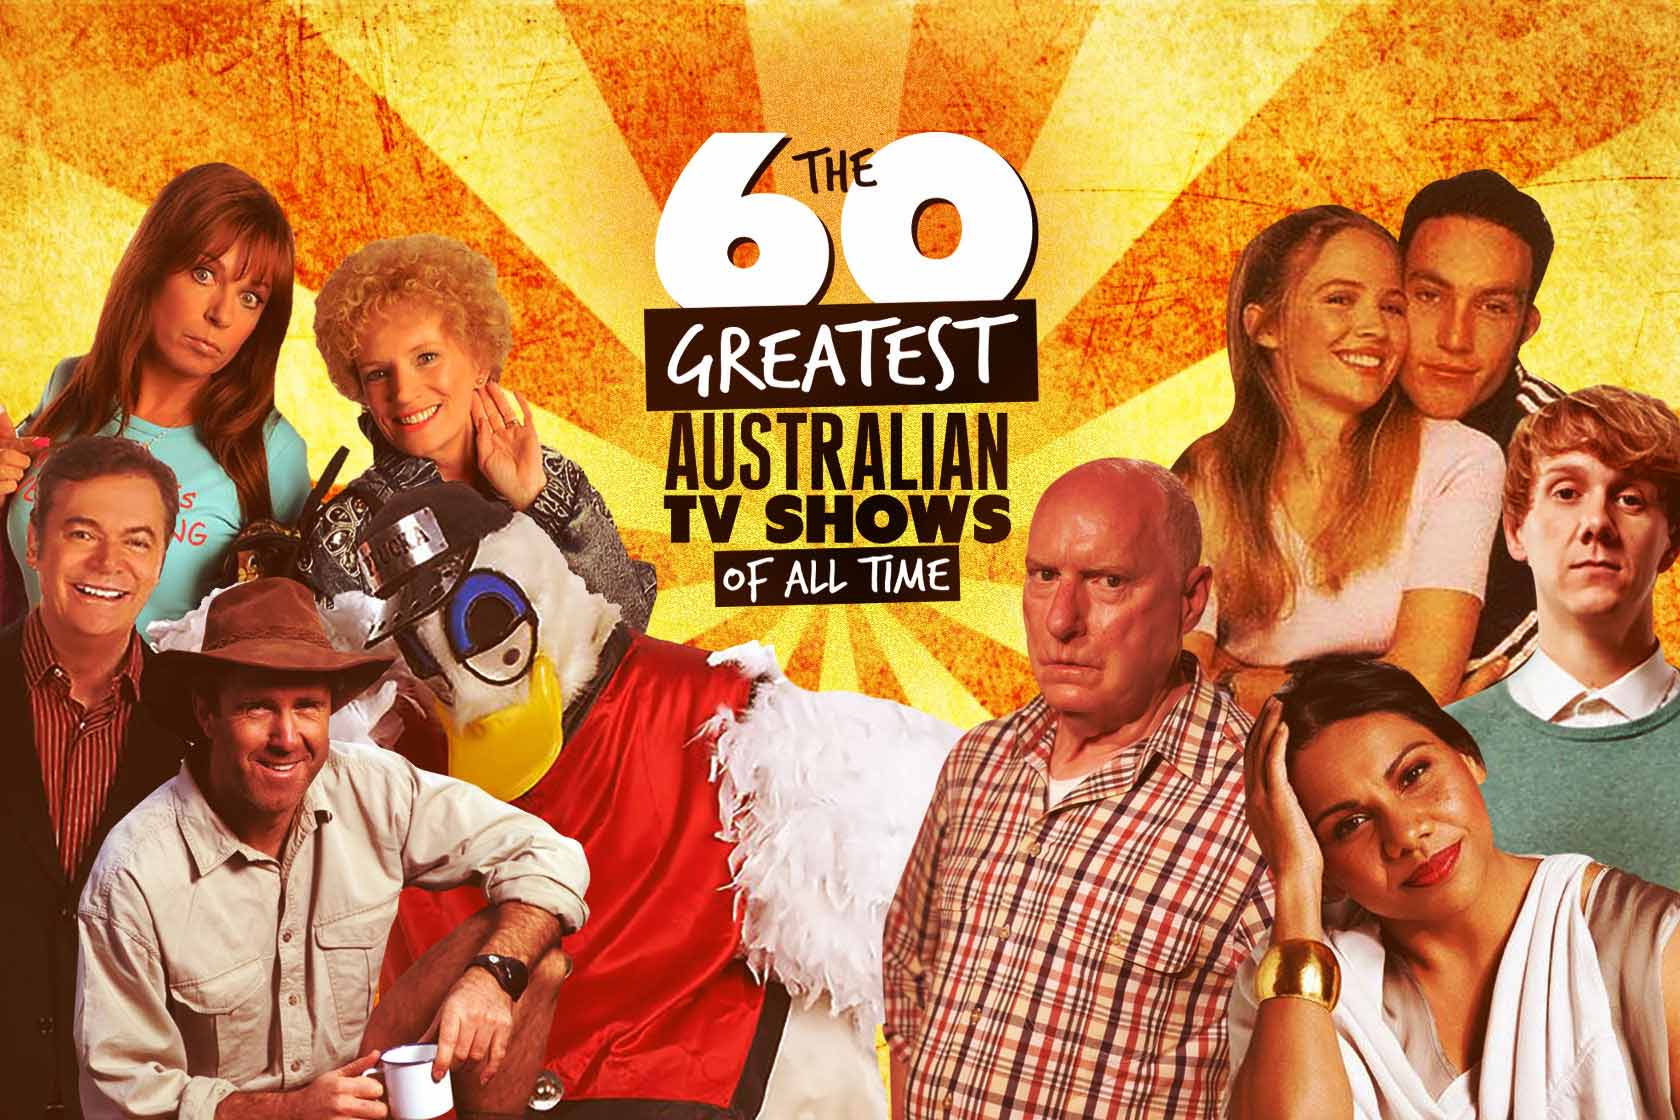 trække sig tilbage periode værtinde The 60 Greatest Australian TV Shows Of All Time